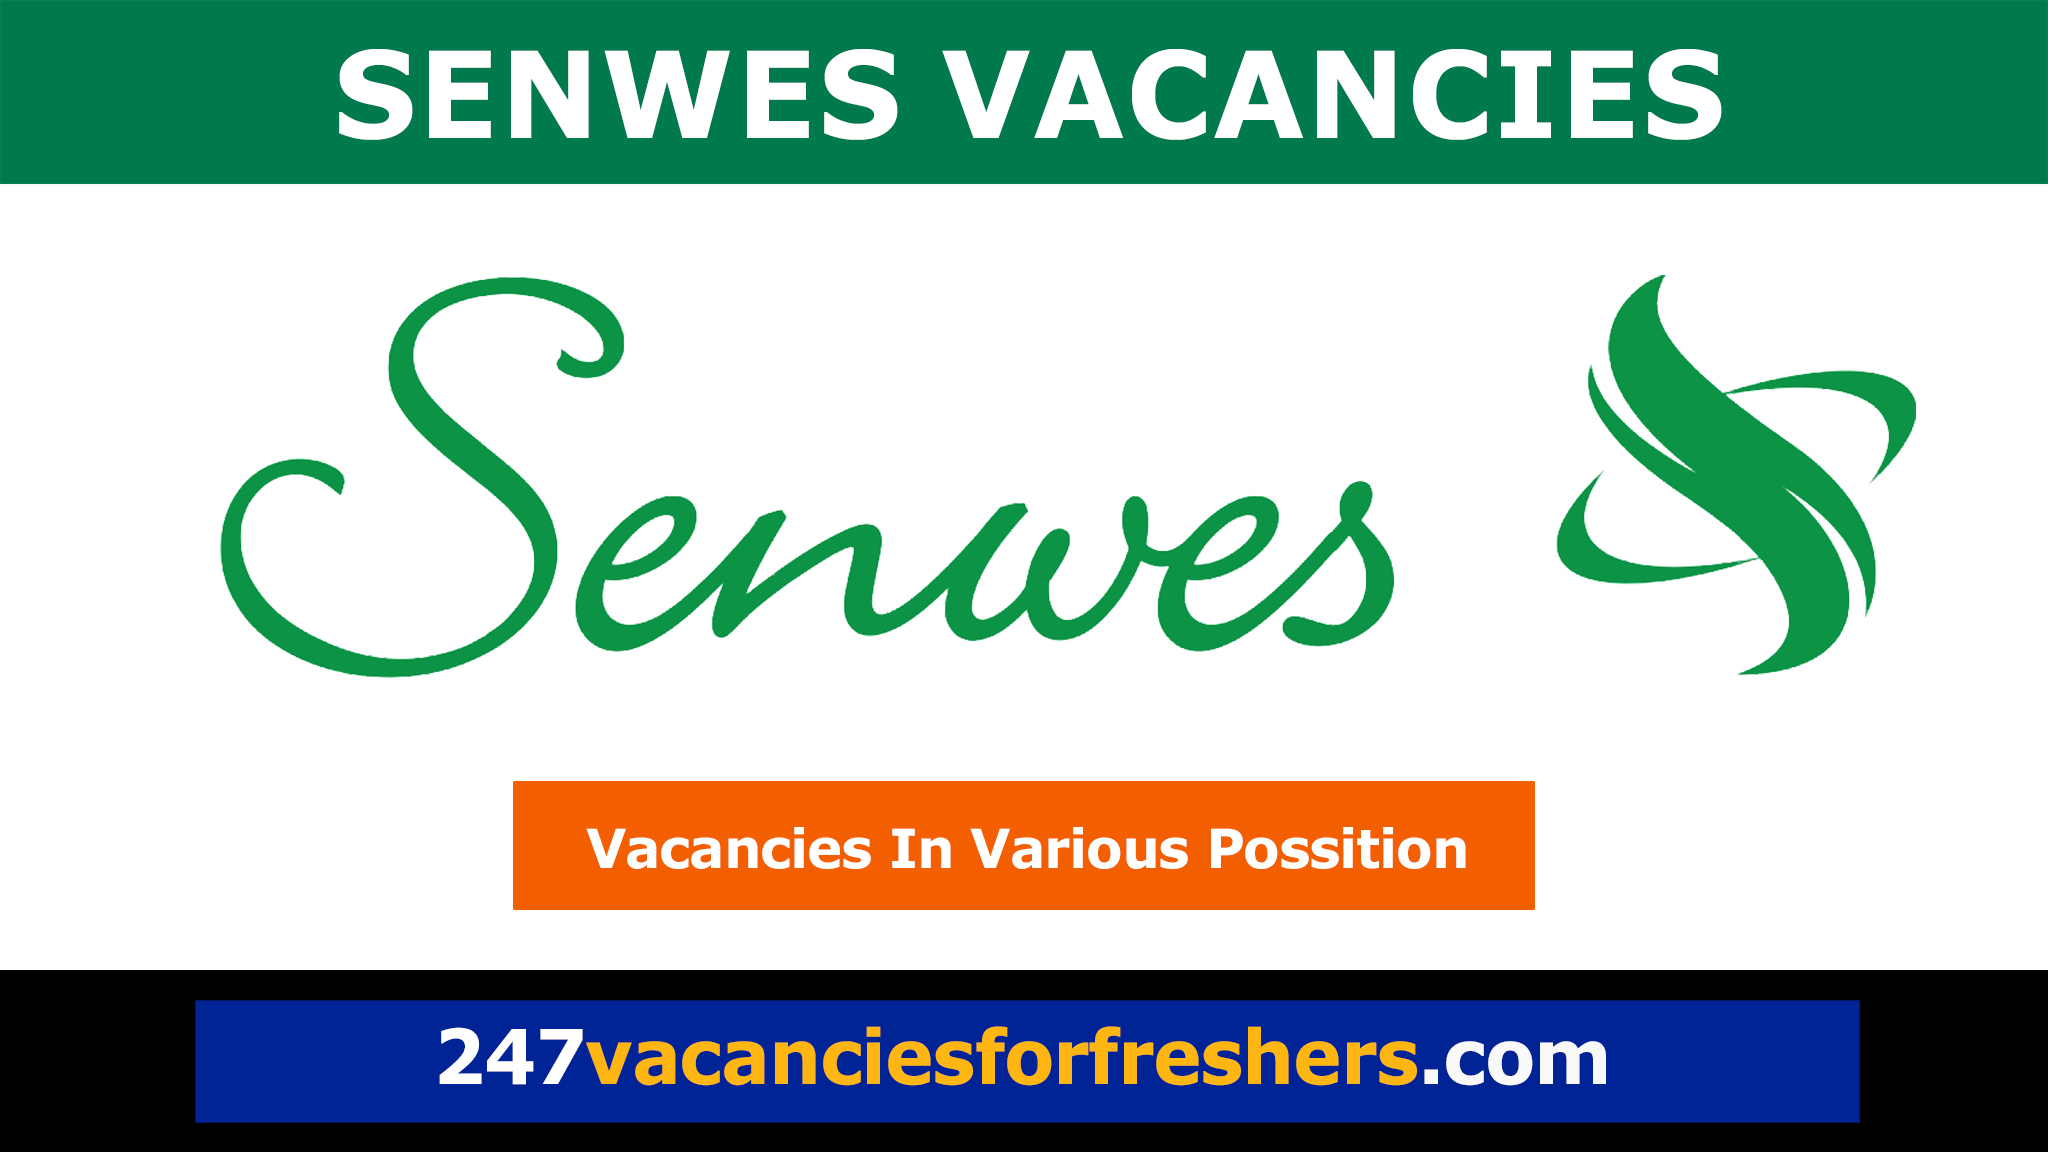 Senwes Vacancies